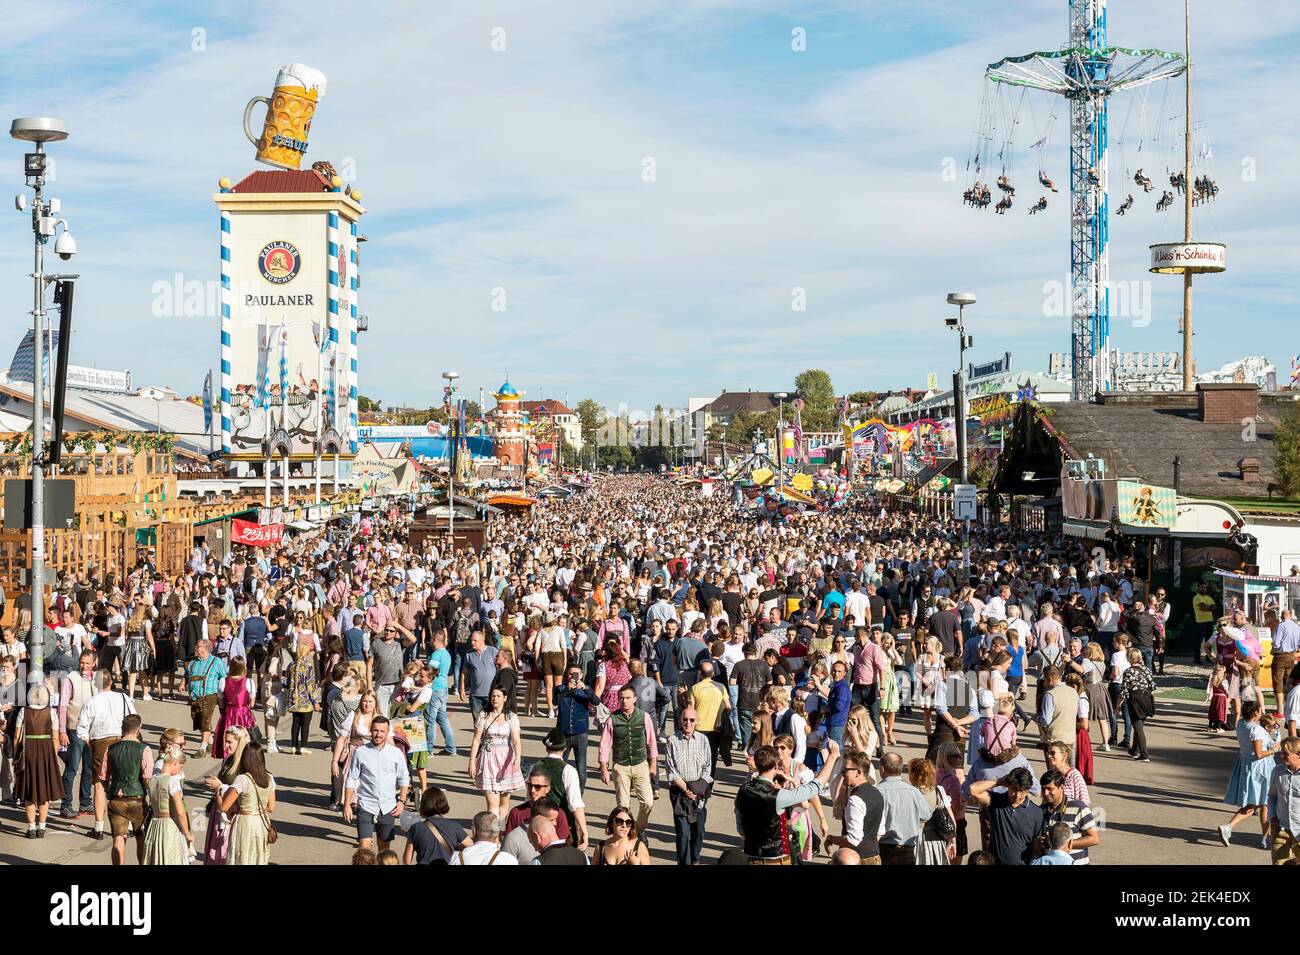 Bavière-Munich-Allemagne, 29 septembre 2019 : le plus grand festival folklorique du monde, l'Oktoberfest de Munich, une scène typique de l'Oktober de Munich Banque D'Images